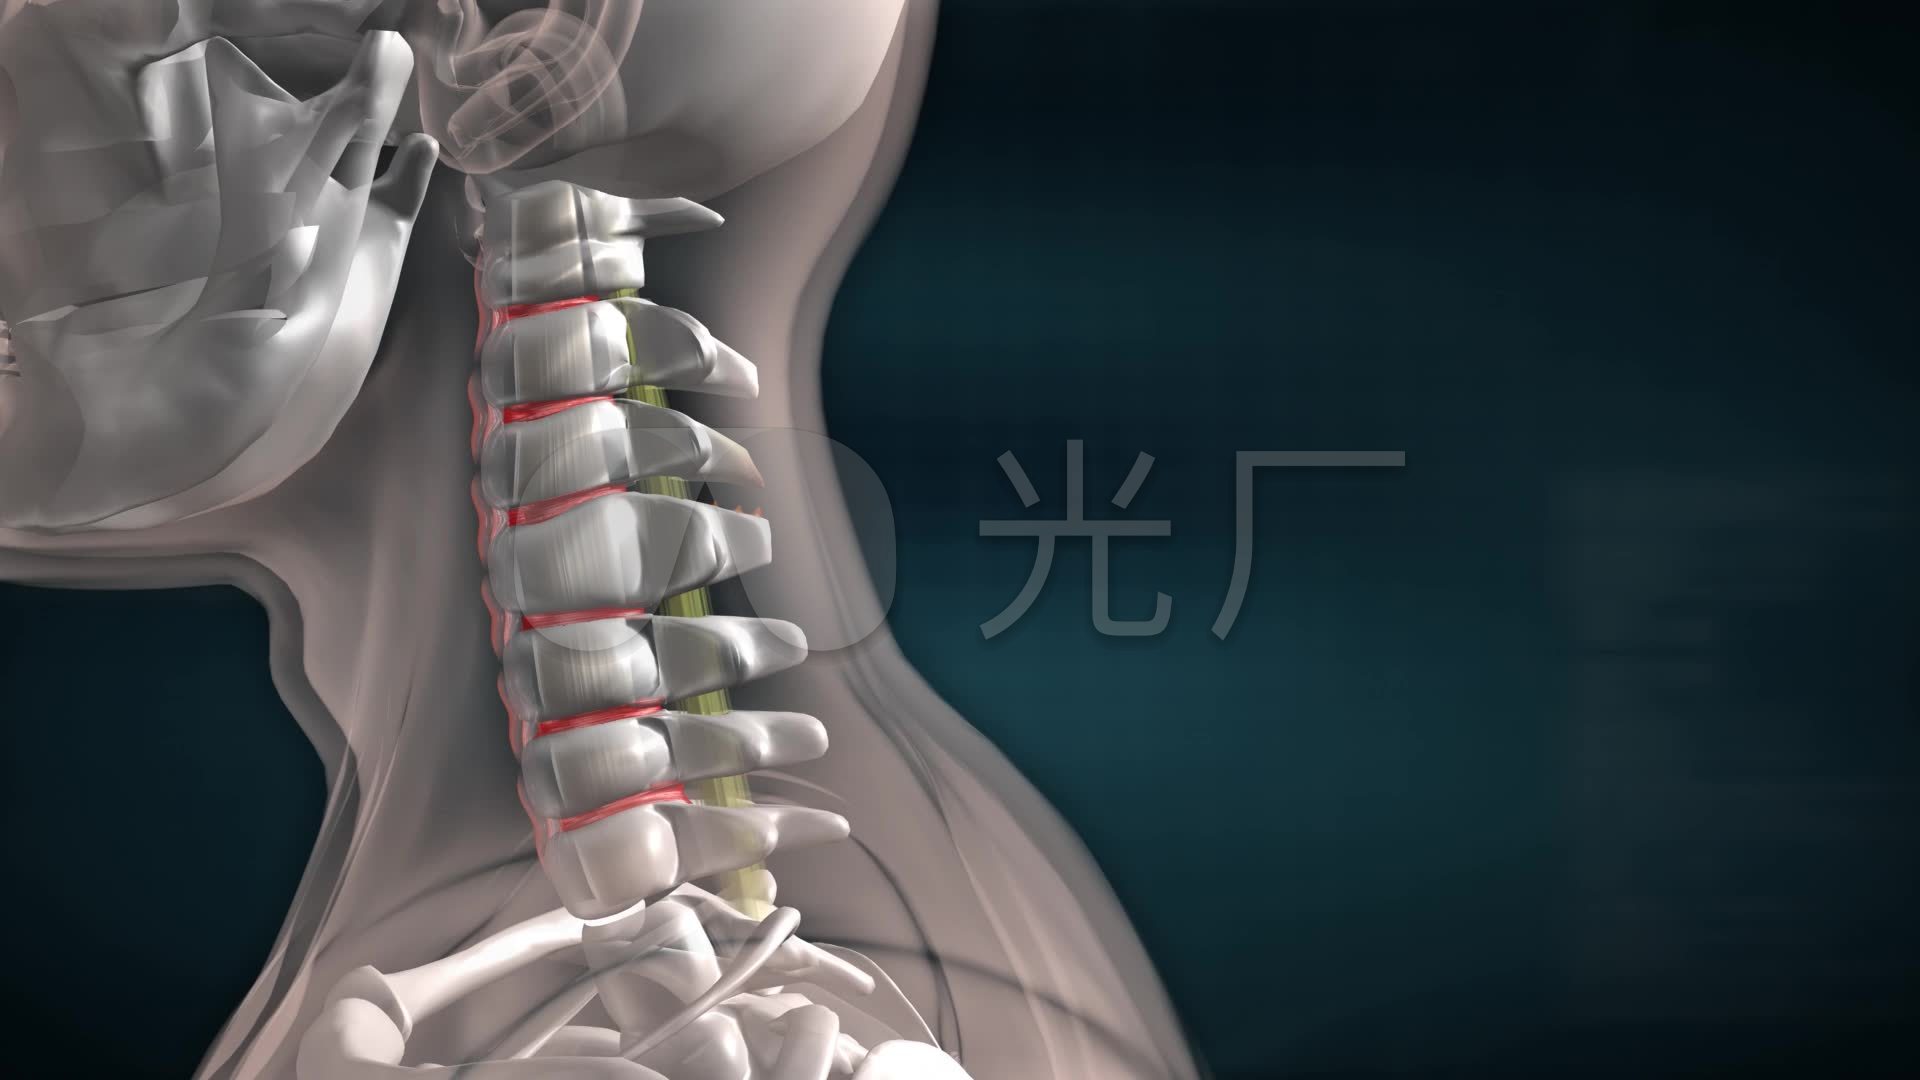 颈椎间盘突出症 脊髓型颈椎病 颈椎管狭窄症 - 好大夫在线